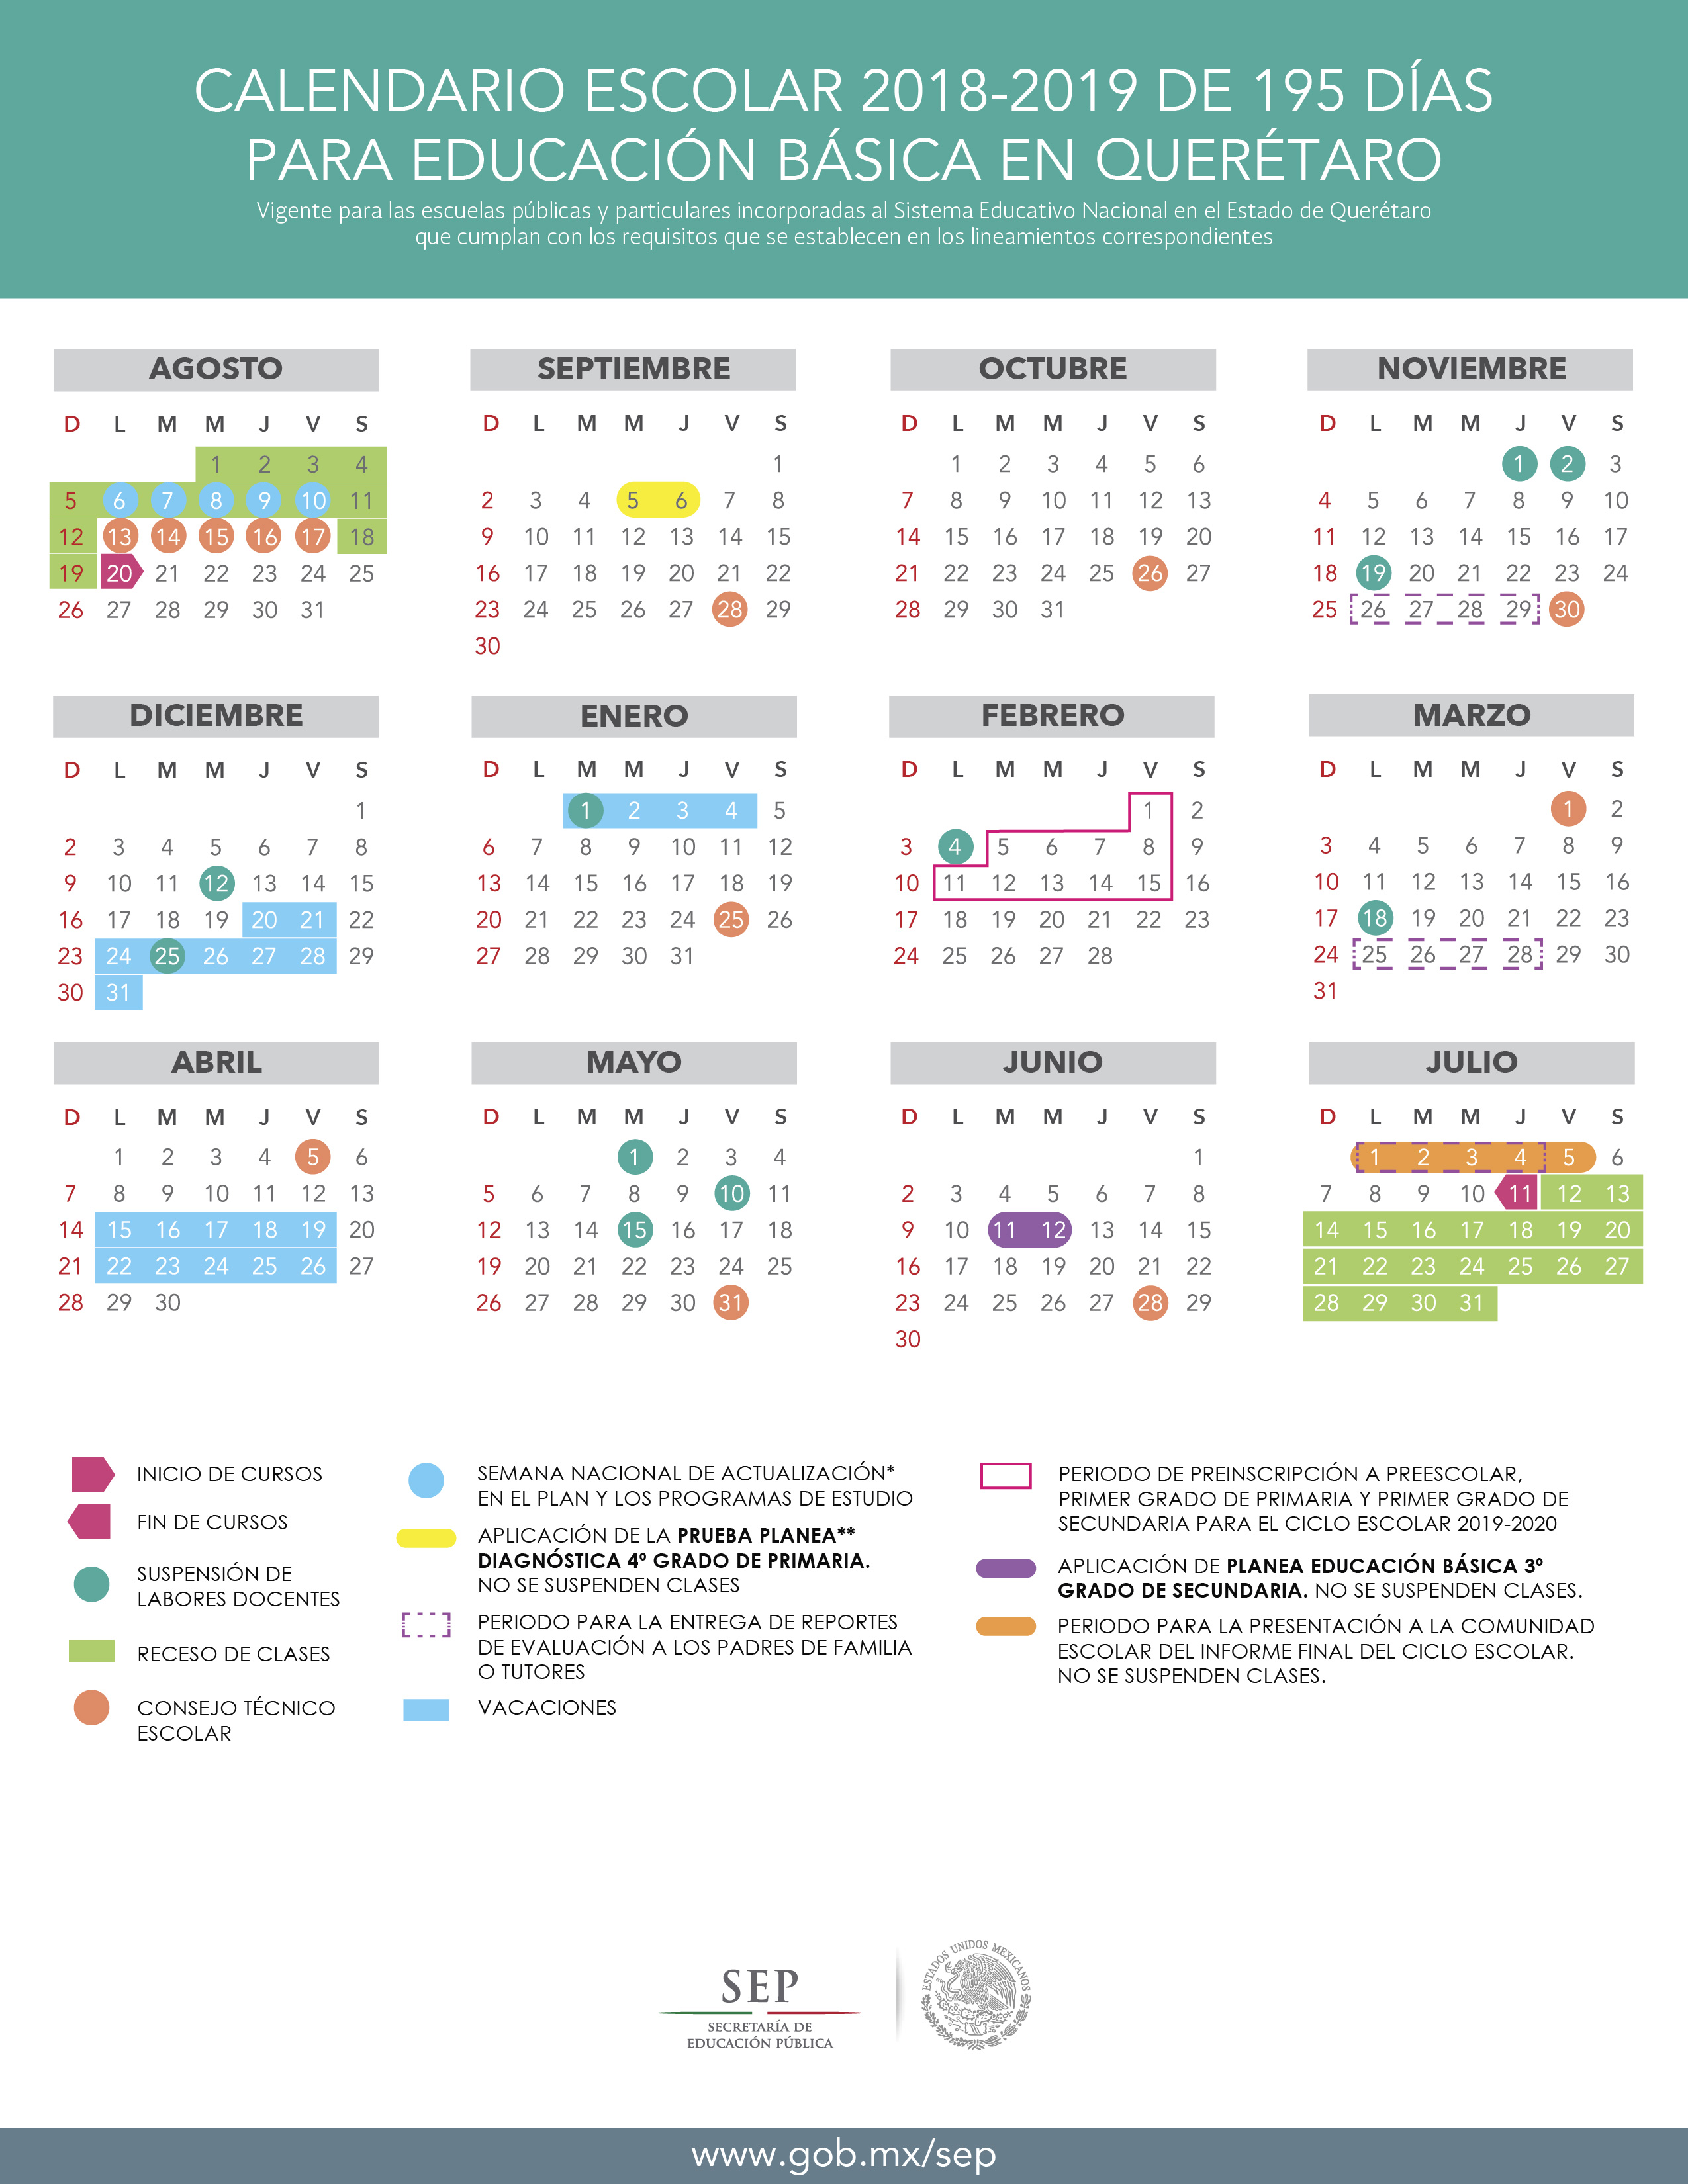 Dan a conocer el calendario escolar de educación básica 2018-2019